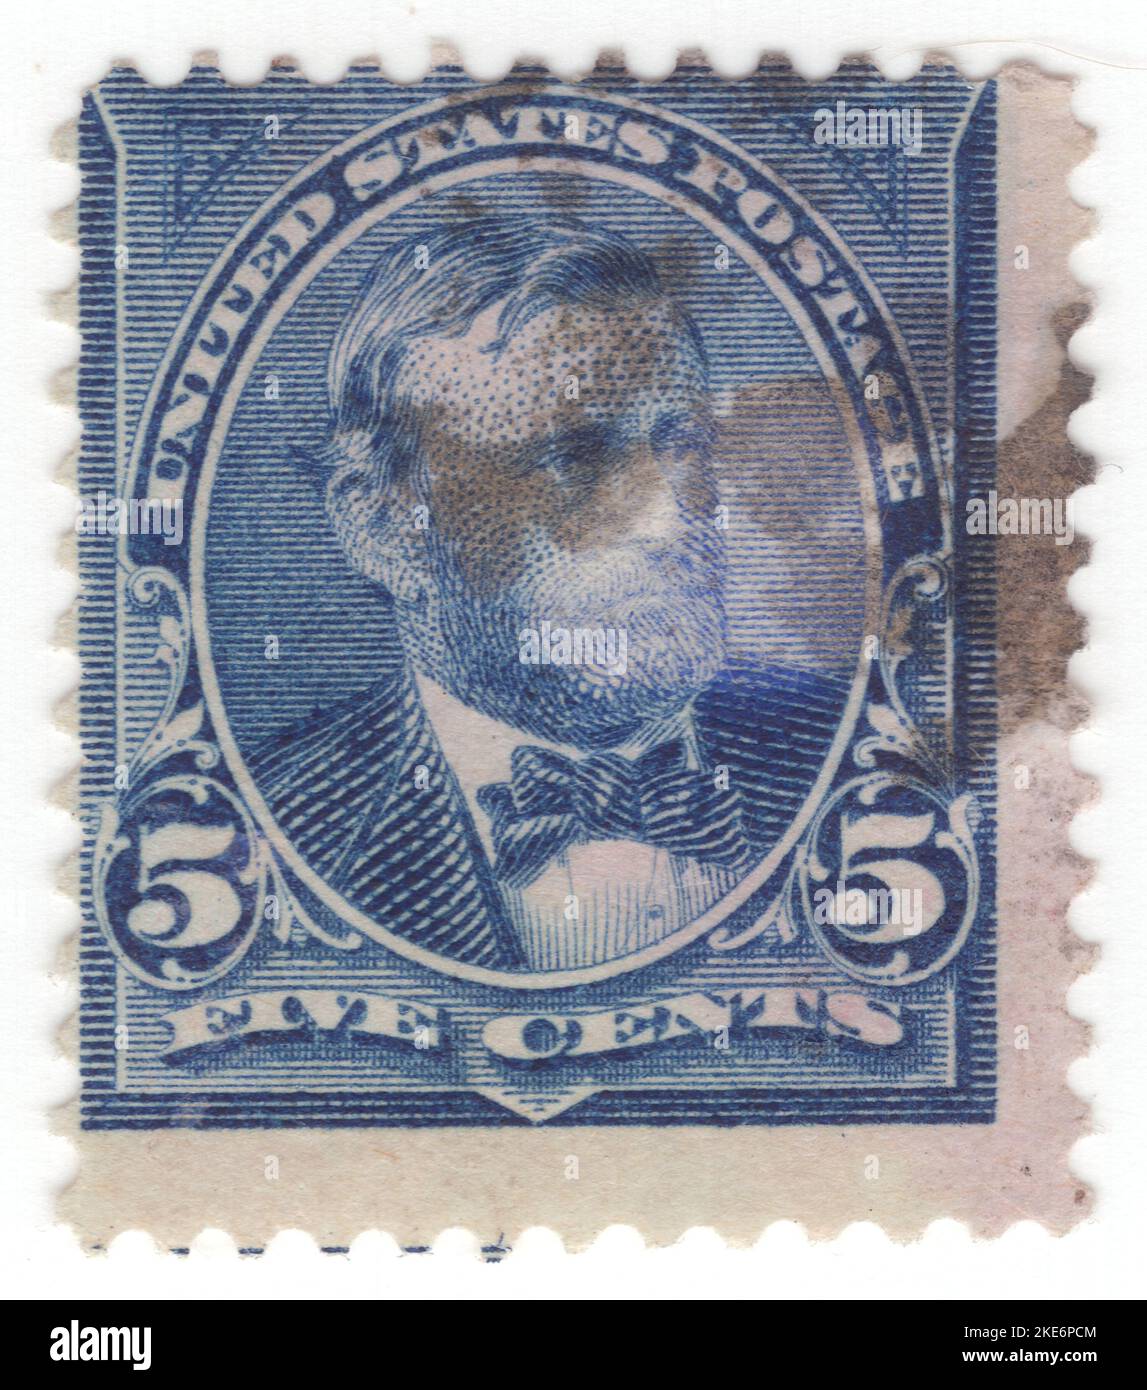 USA - 1898: Eine dunkelblaue Briefmarke mit 5 Cent, die das Porträt von Ulysses S. Grant (geb. Hiram Ulysses Grant) zeigt, einem amerikanischen Militäroffizier und Politiker, der von 1869 bis 1877 als Präsident der Vereinigten Staaten von 18. diente. Als kommandierender General führte er 1865 die Union Army zum Sieg im amerikanischen Bürgerkrieg und diente danach kurz als Kriegsminister. Später, als Präsident, war Grant ein effektiver Bürgerrechtler, der den Gesetzentwurf unterzeichnete, der das Justizministerium gründete und mit radikalen Republikanern zusammenarbeitete, um Afroamerikaner während des Wiederaufbaus zu schützen Stockfoto